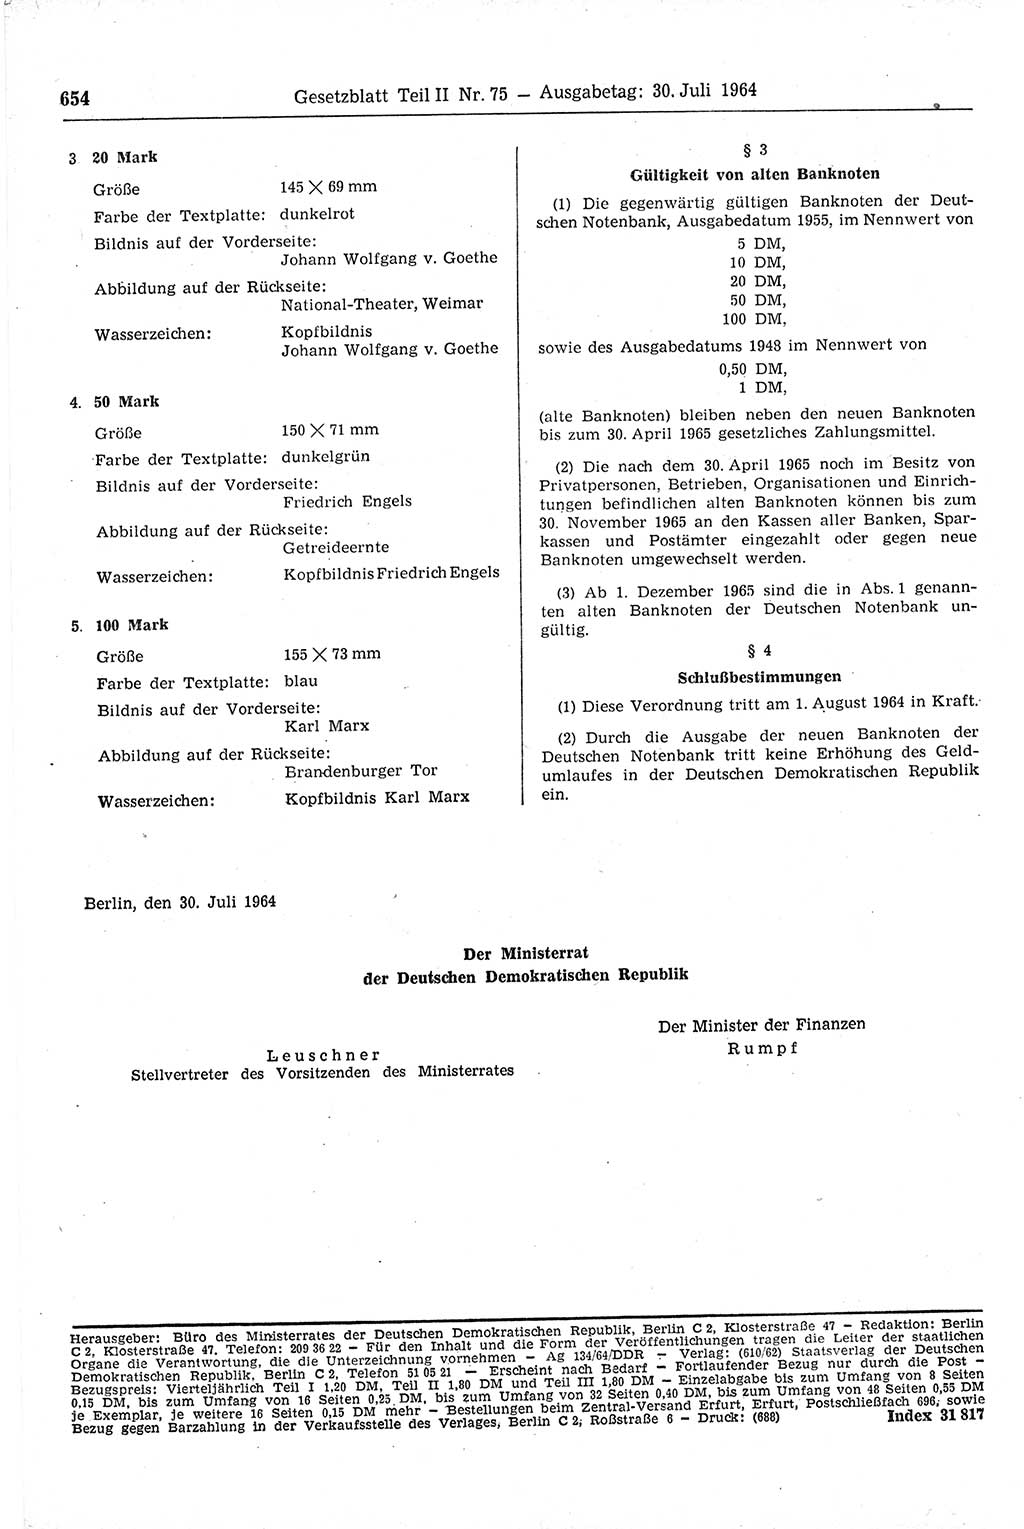 Gesetzblatt (GBl.) der Deutschen Demokratischen Republik (DDR) Teil ⅠⅠ 1964, Seite 654 (GBl. DDR ⅠⅠ 1964, S. 654)